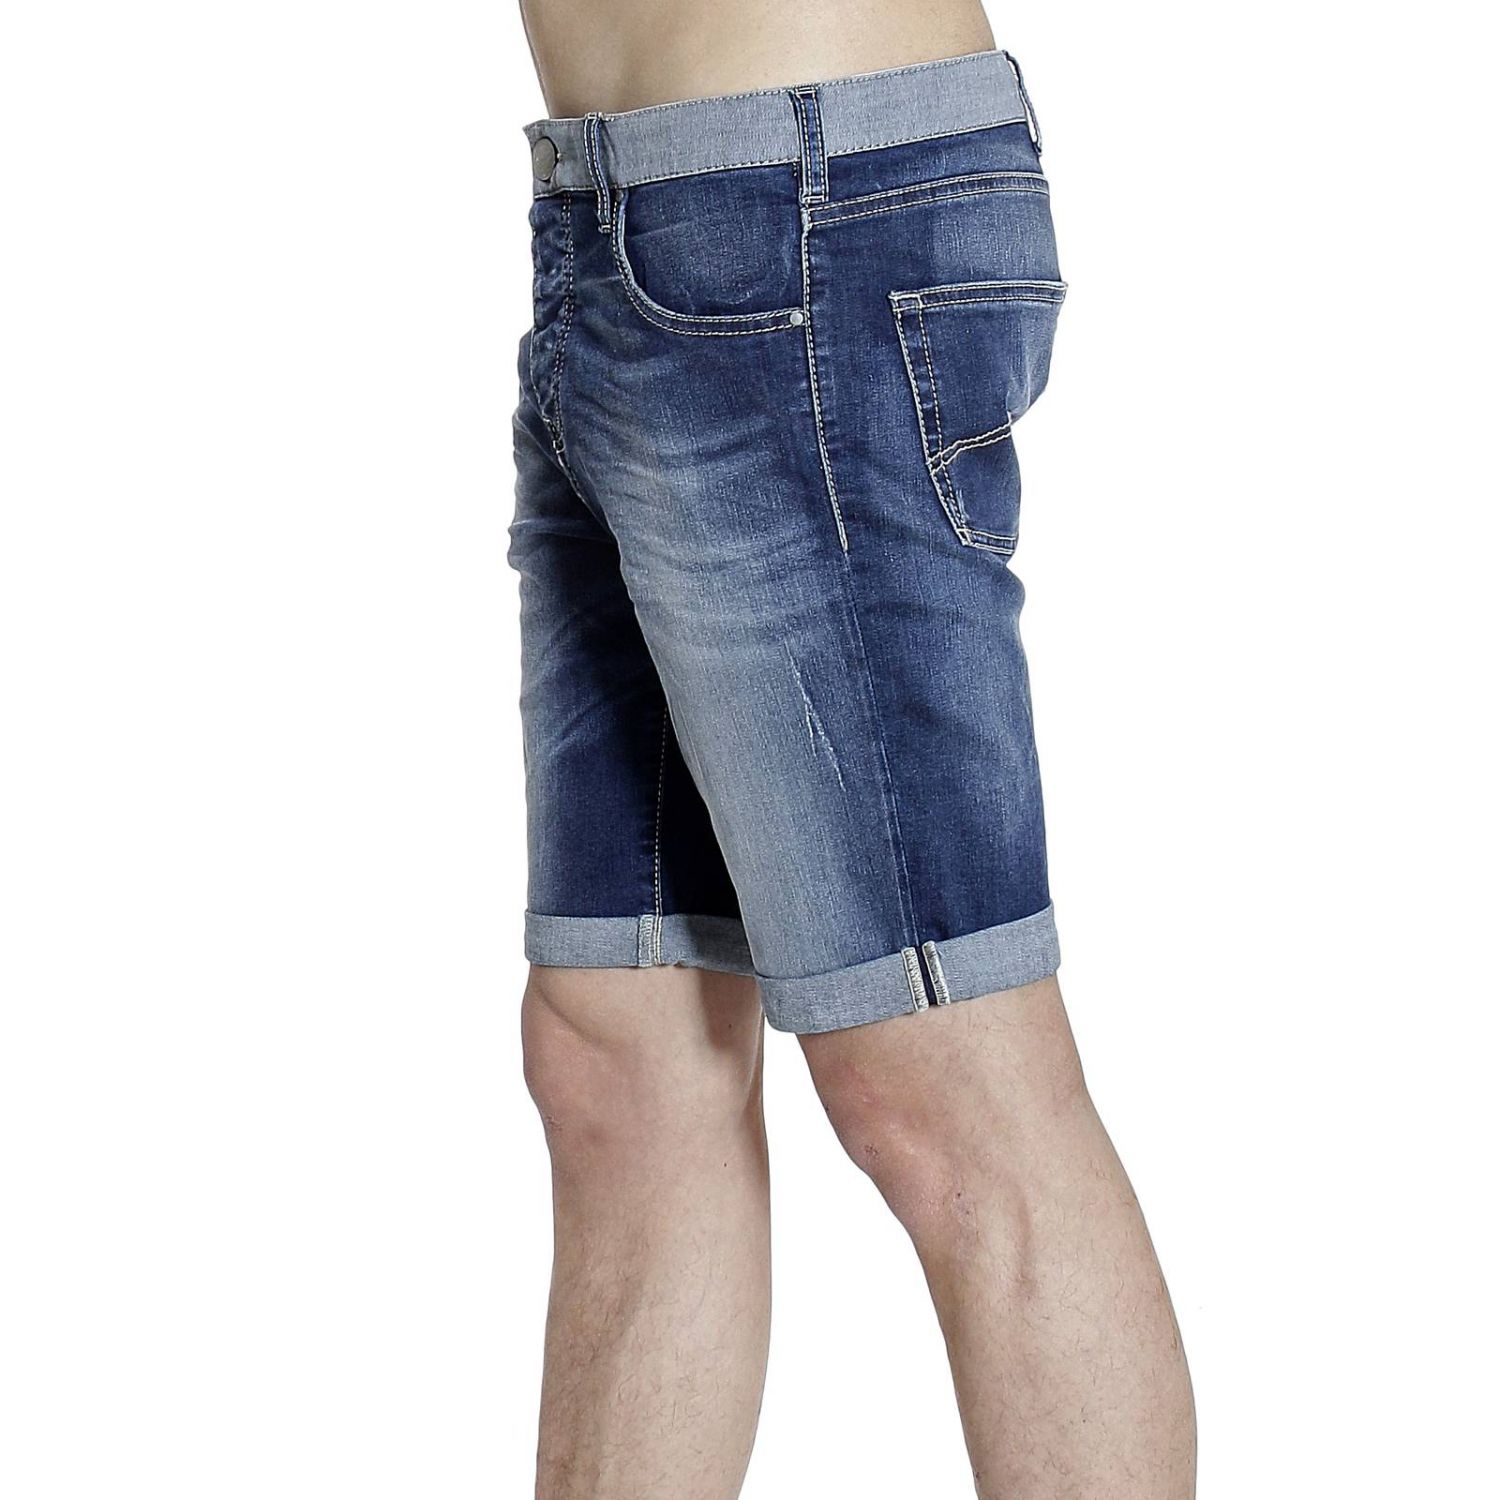 armani jean shorts